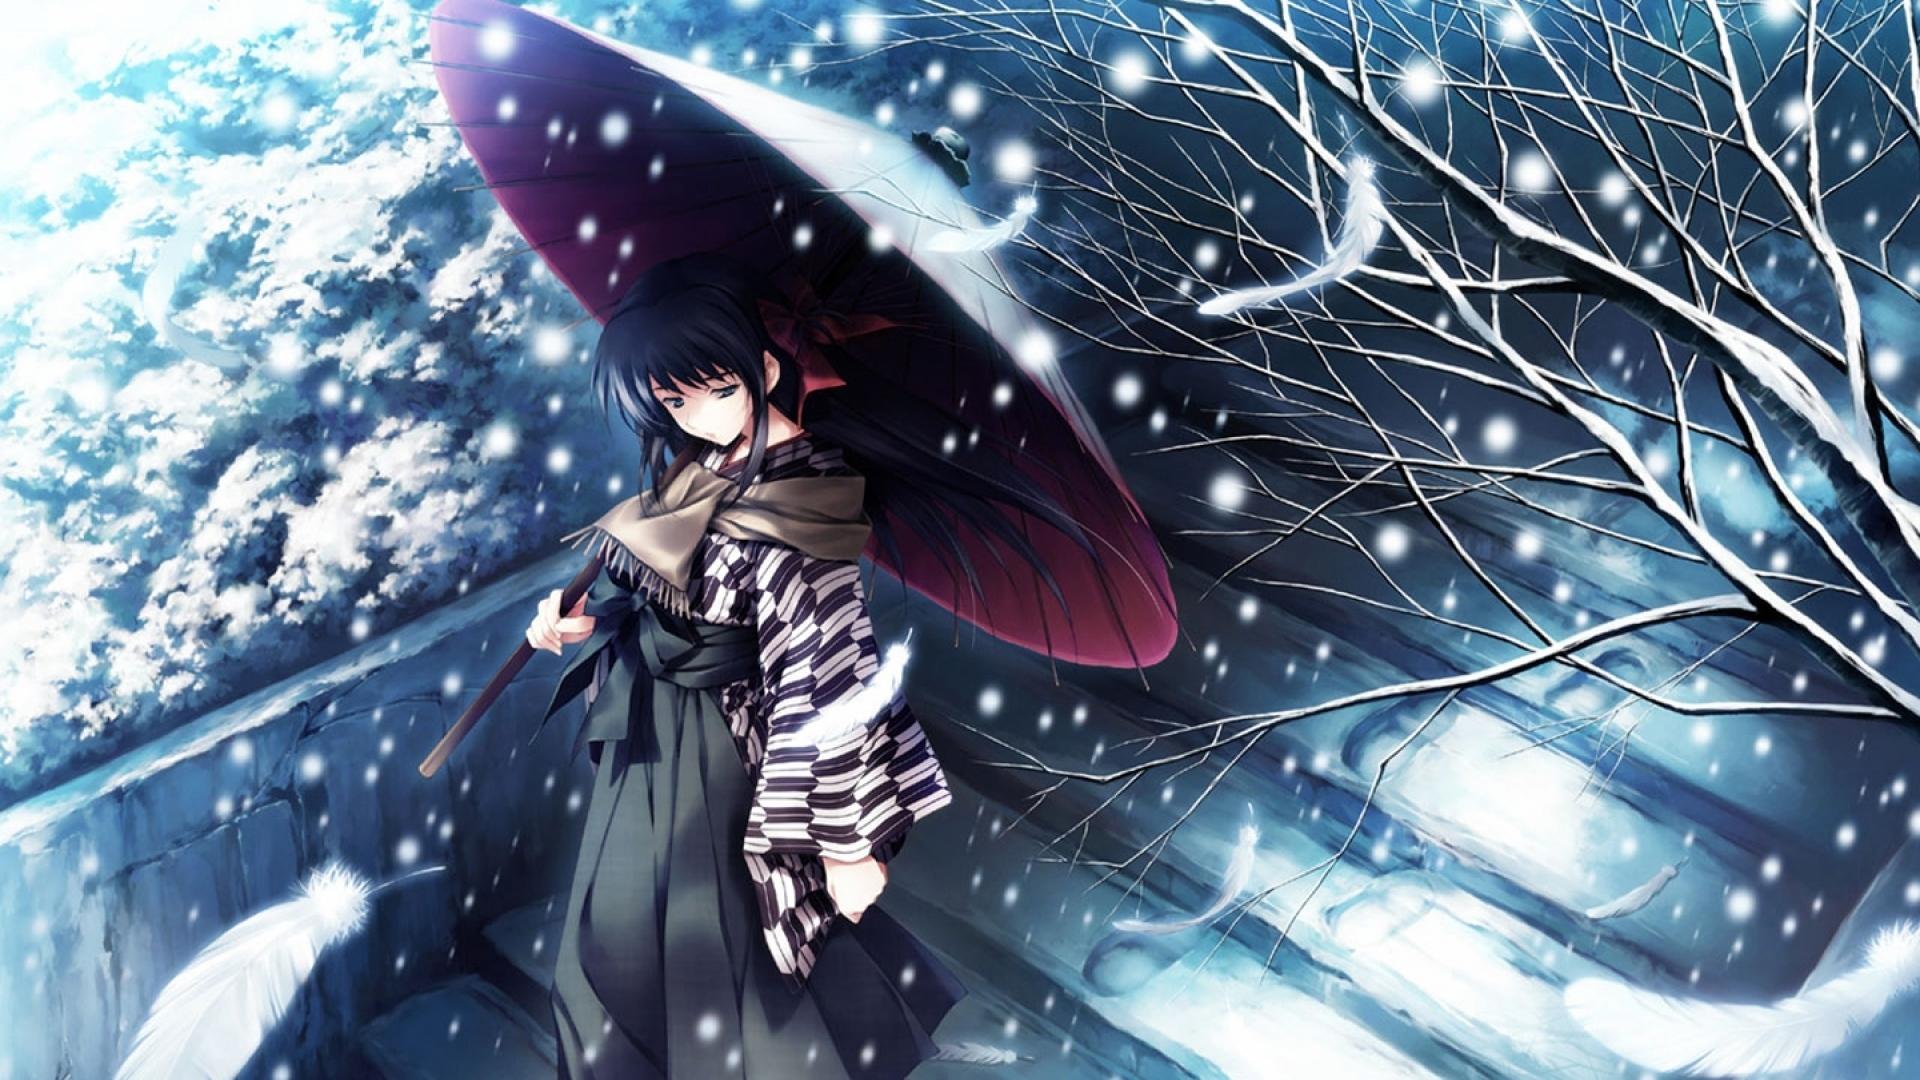 Snow Anime Wallpaper Free Snow Anime Background